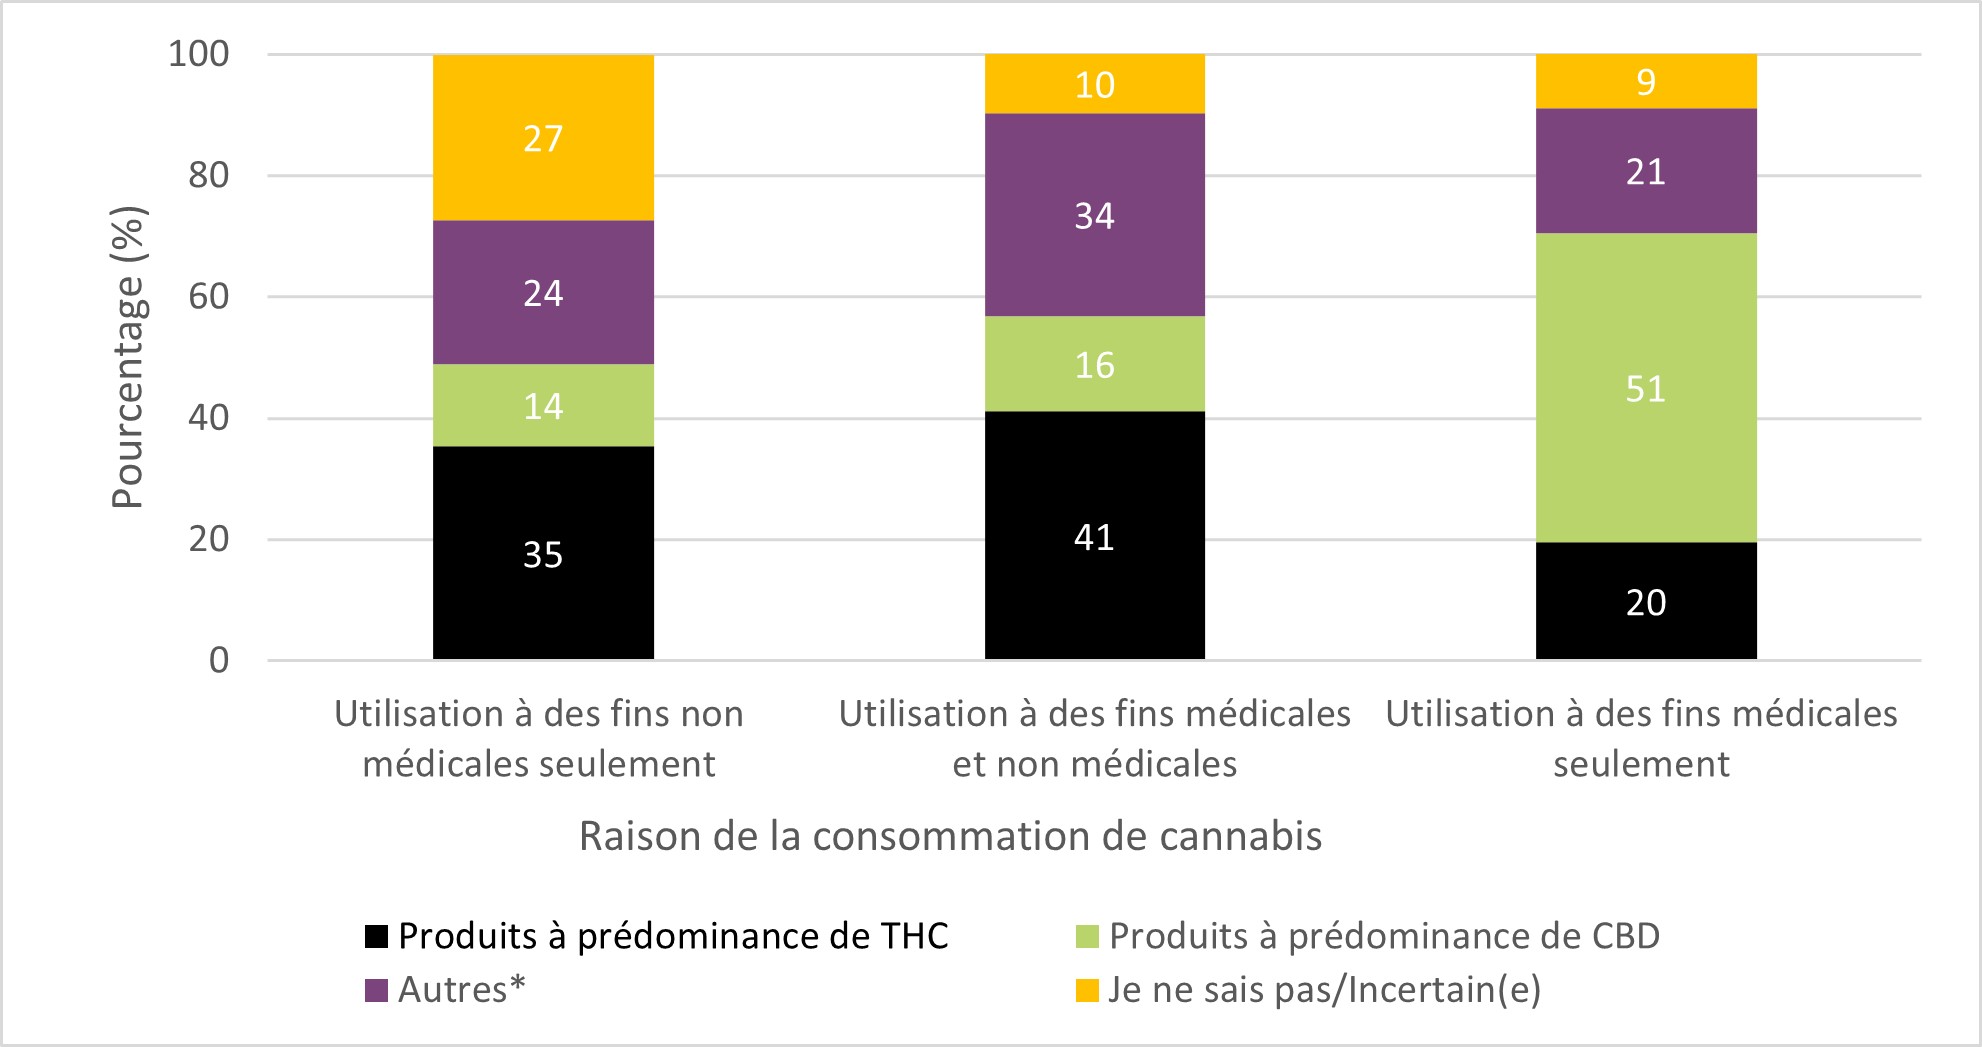 Figure 12 : Teneurs habituelles en THC et en CBD des produits de cannabis utilisés parmi les personnes ayant consommé du cannabis au cours des 12 derniers mois, selon la raison de la consommation. Équivalent textuel ci-dessous.